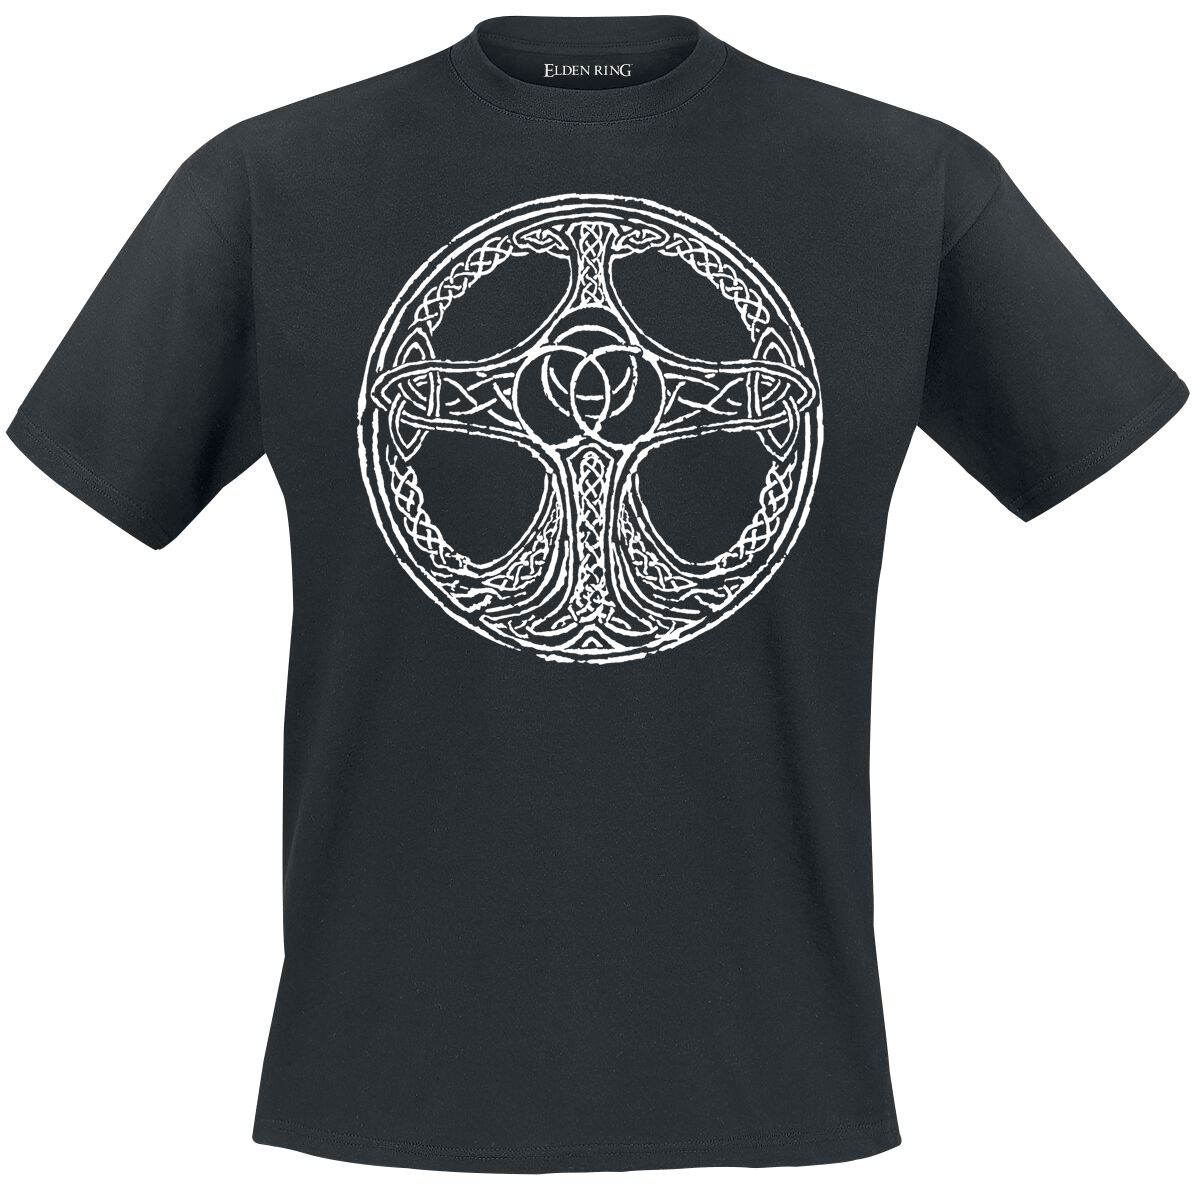 Elden Ring - Gaming T-Shirt - Erdtree - S bis XXL - für Männer - Größe M - schwarz  - EMP exklusives Merchandise!